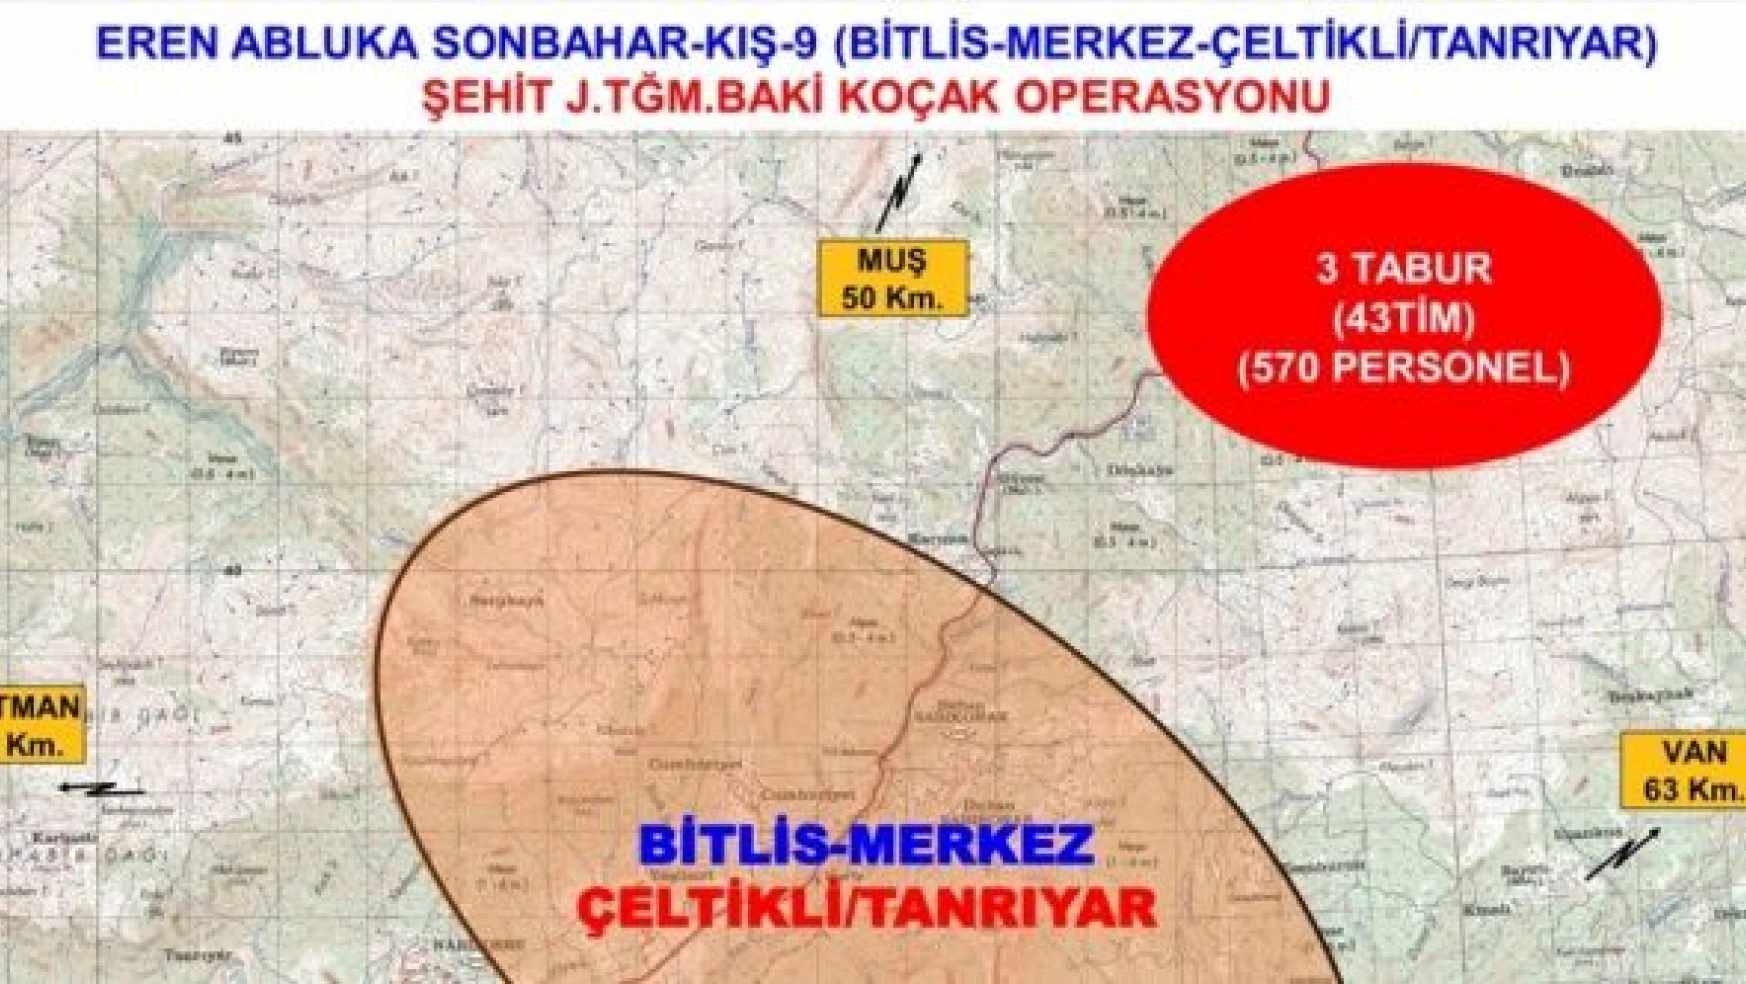 Bitlis'te 'Eren Abluka Sonbahar-Kış-9 Operasyonu' başlatıldı